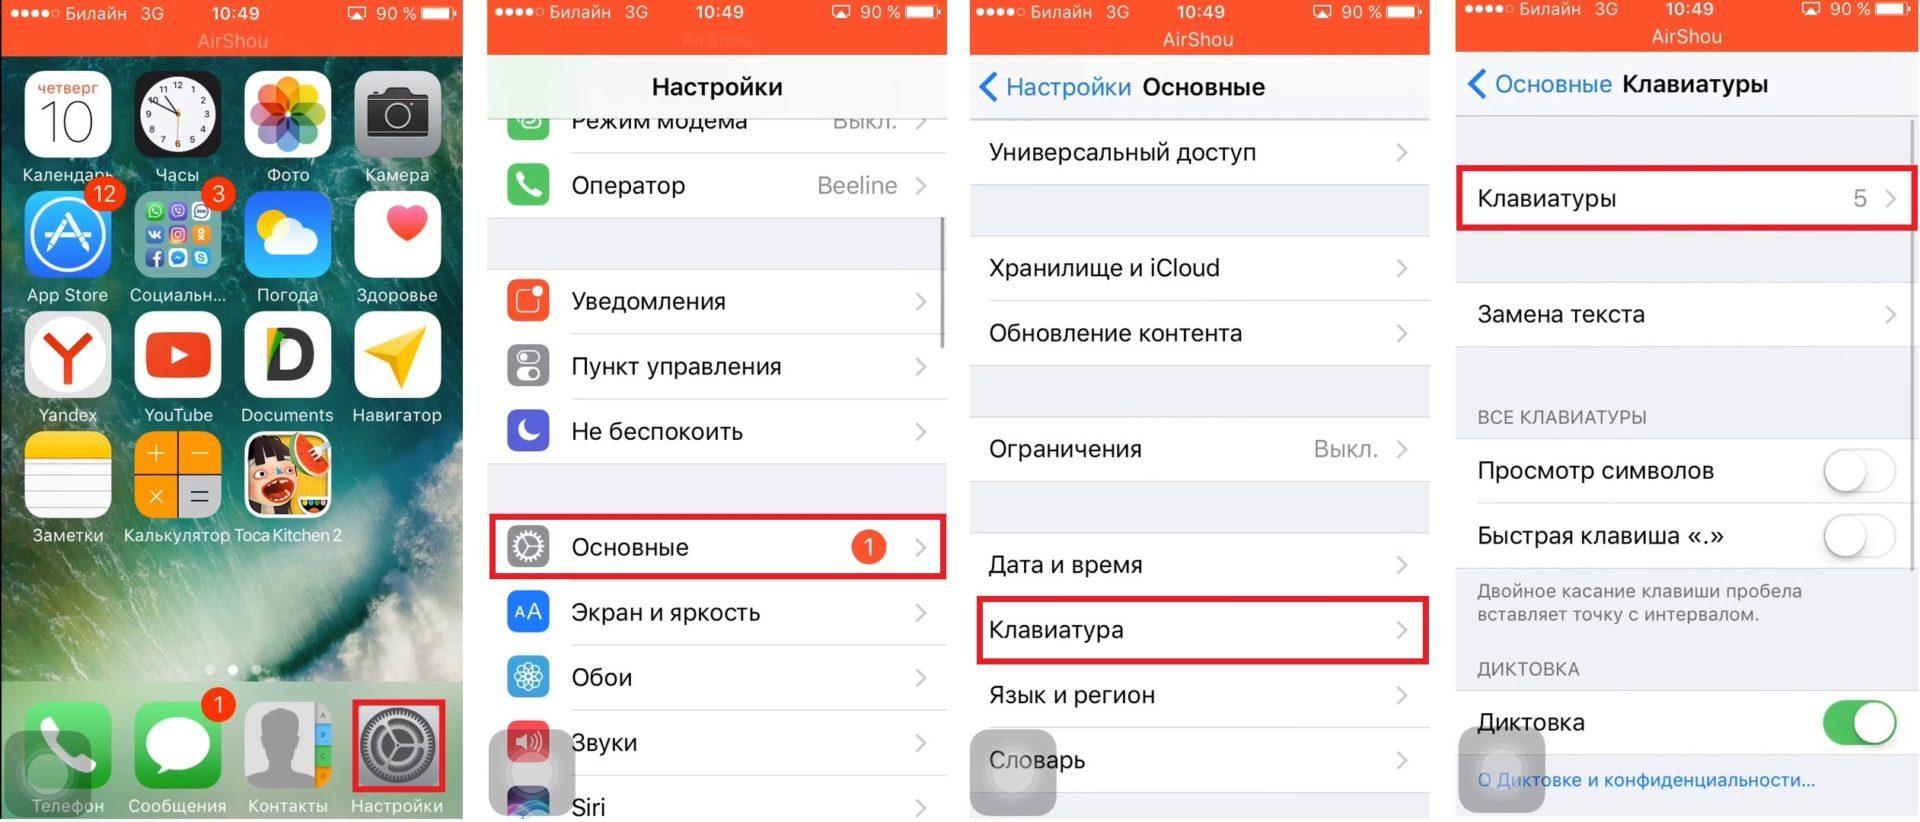 Как перевести телеграмм на русский язык на айфоне фото 104